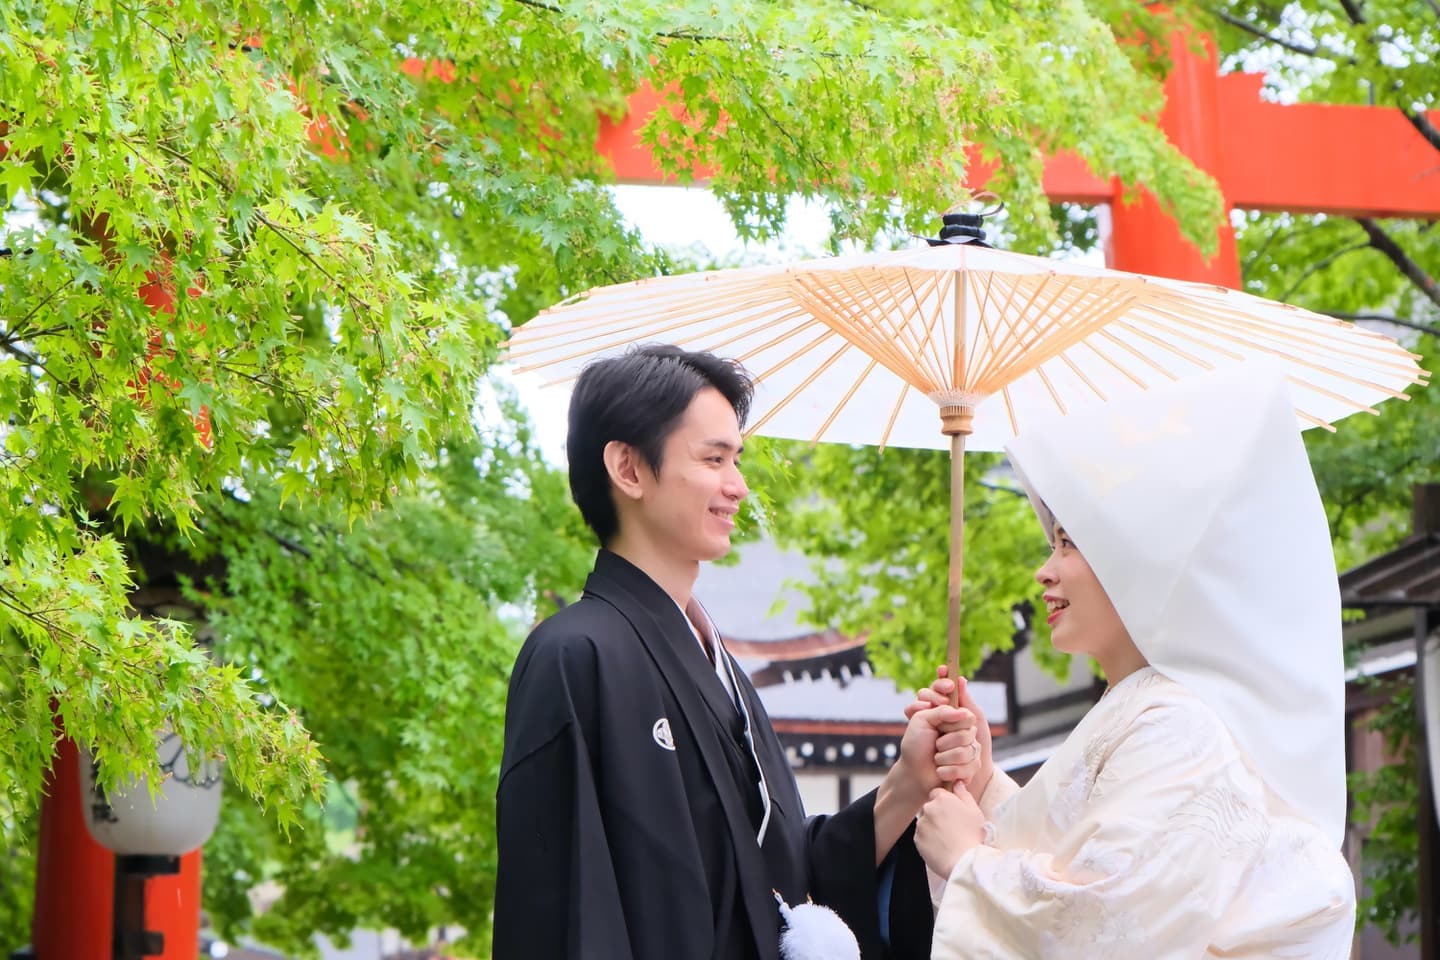 白無垢での神社和装結婚式の写真